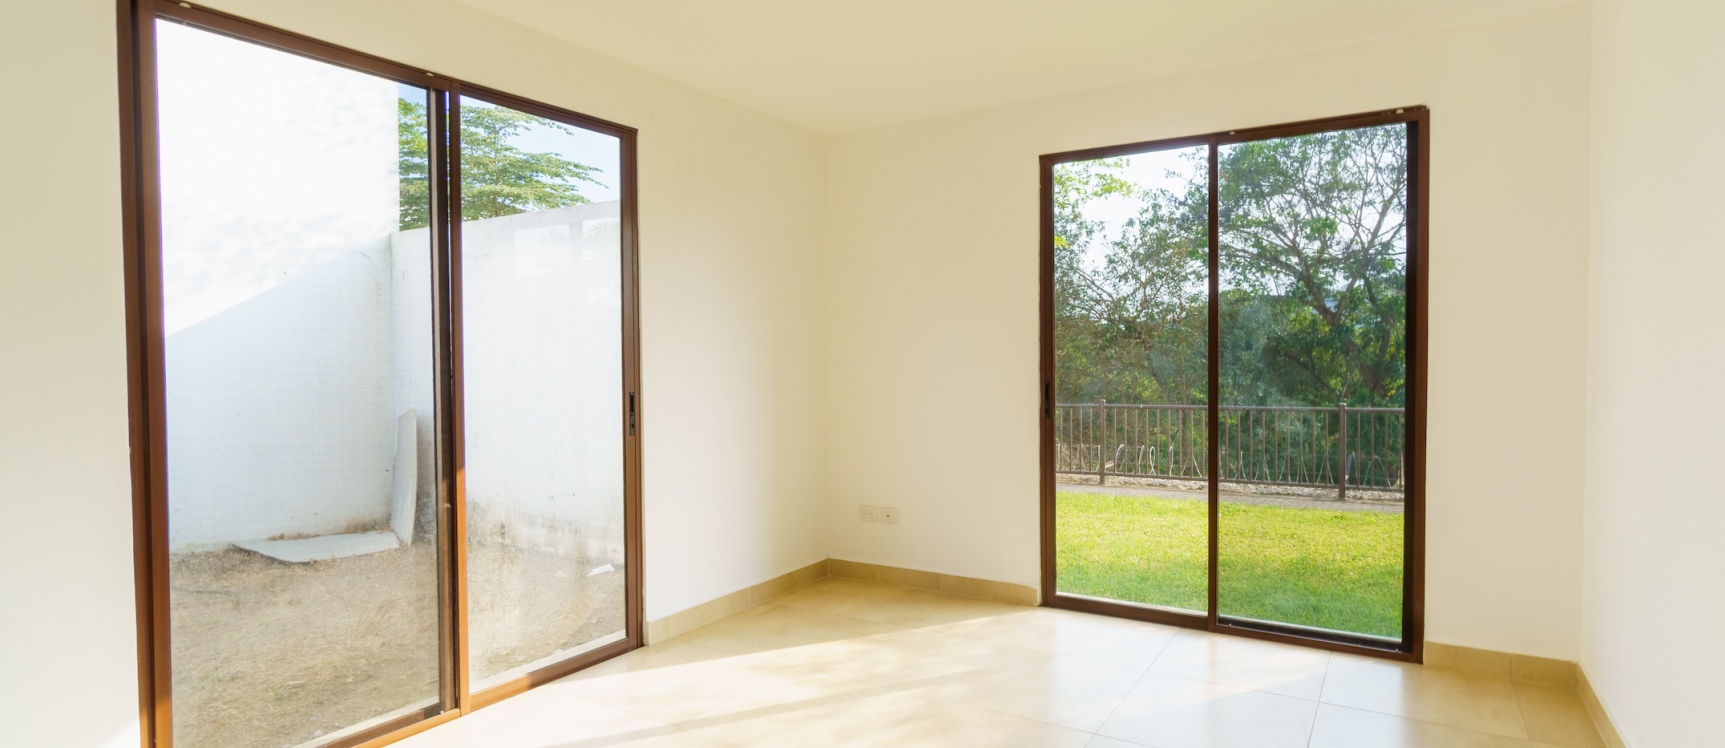 GeoBienes - Departamento 3 habitaciones planta baja con patio en venta, Urbanización Villas del Bosque - Plusvalia Guayaquil Casas de venta y alquiler Inmobiliaria Ecuador